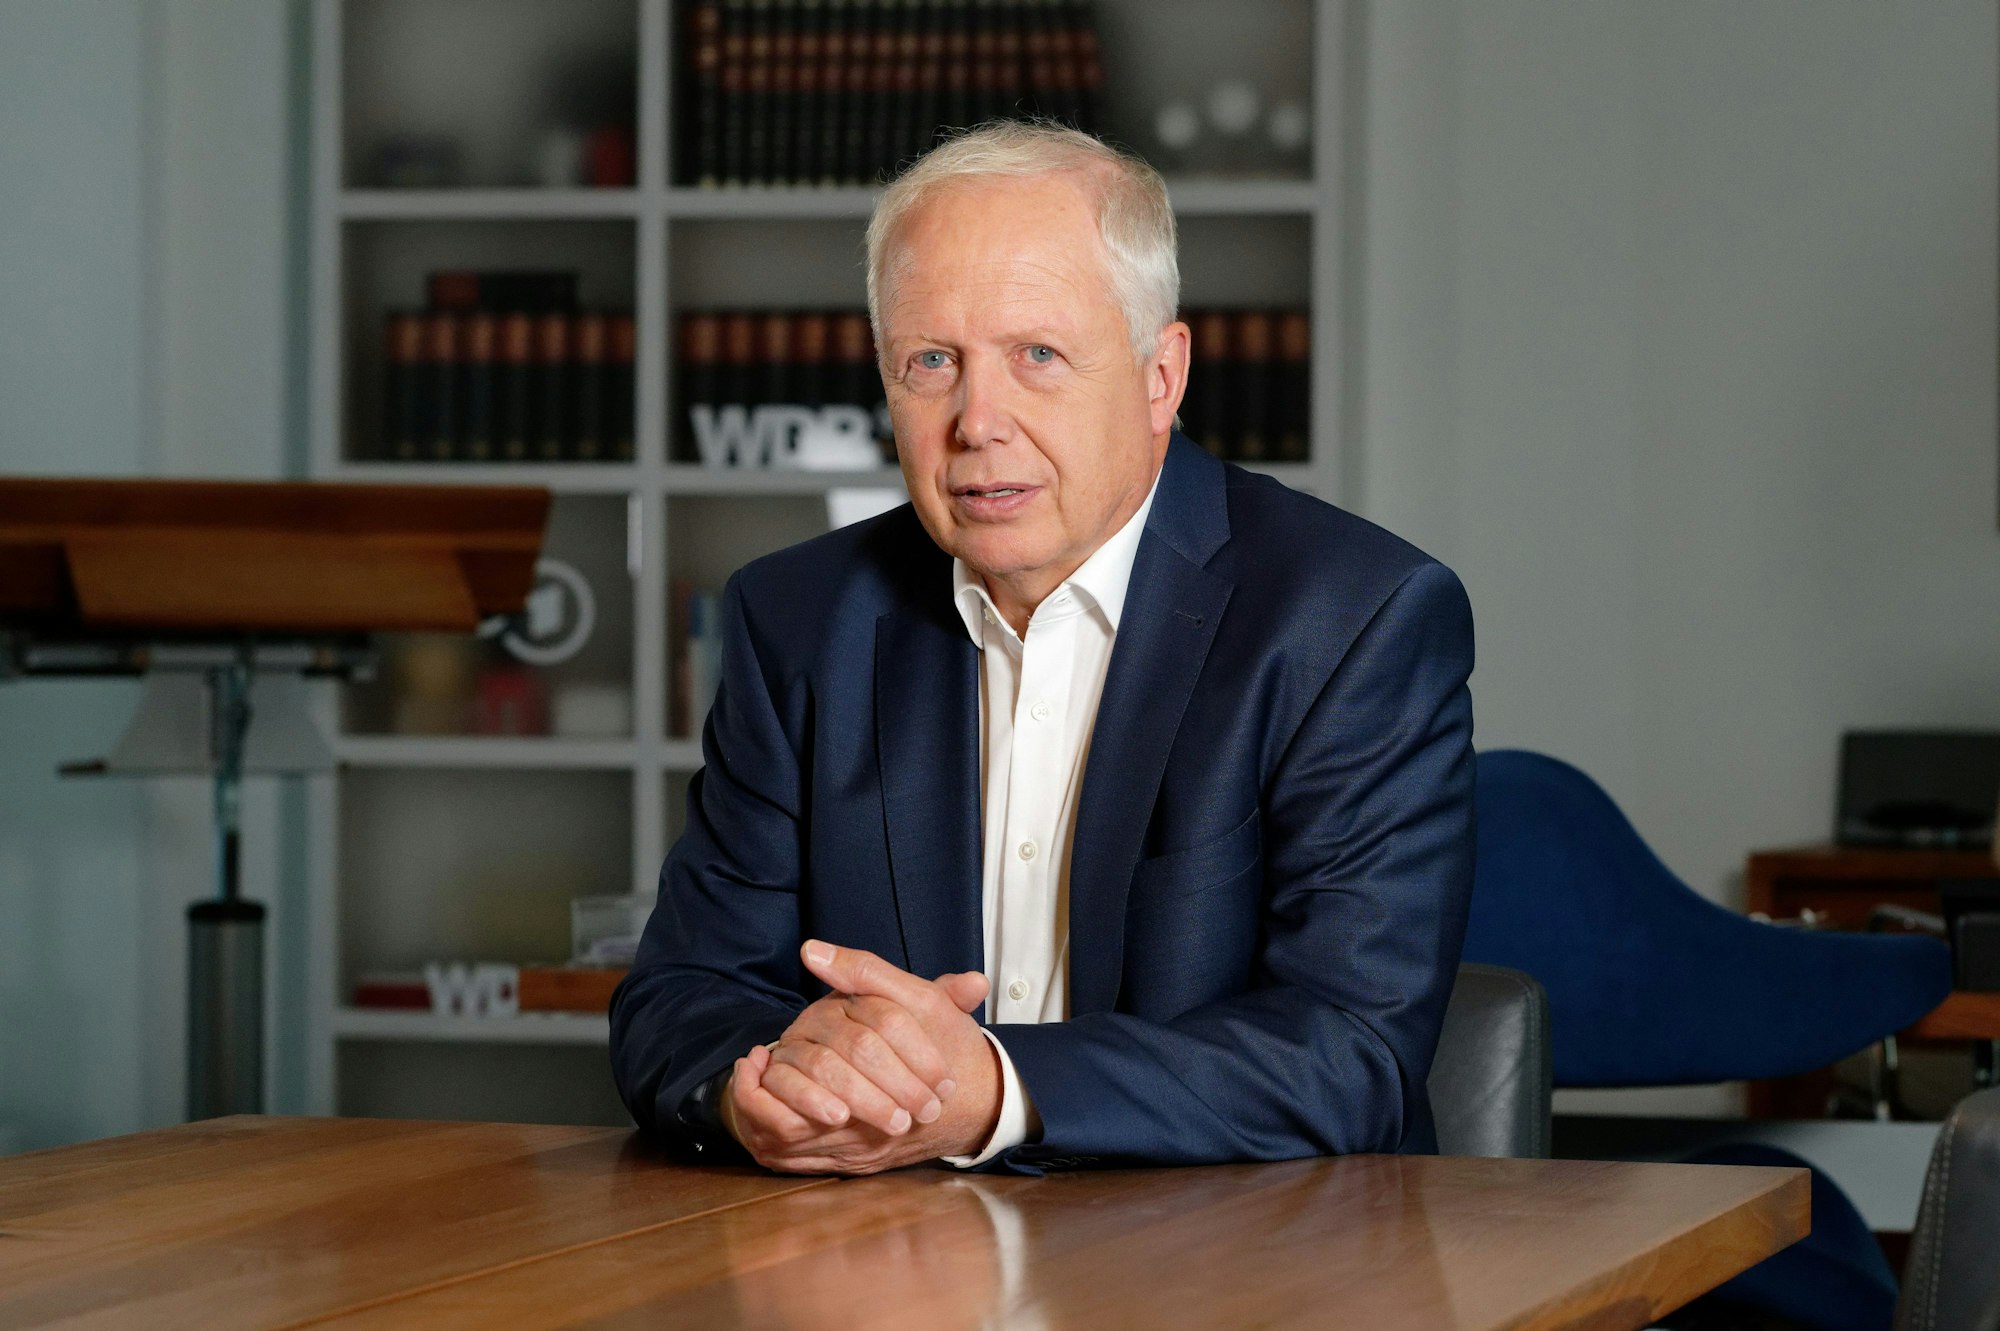 Tom Buhrow, Intendant des Westdeutschen Rundfunks (WDR), sitzt in seinem Büro im Gebäude des WDR. Er trägt einen blauen Anzug.